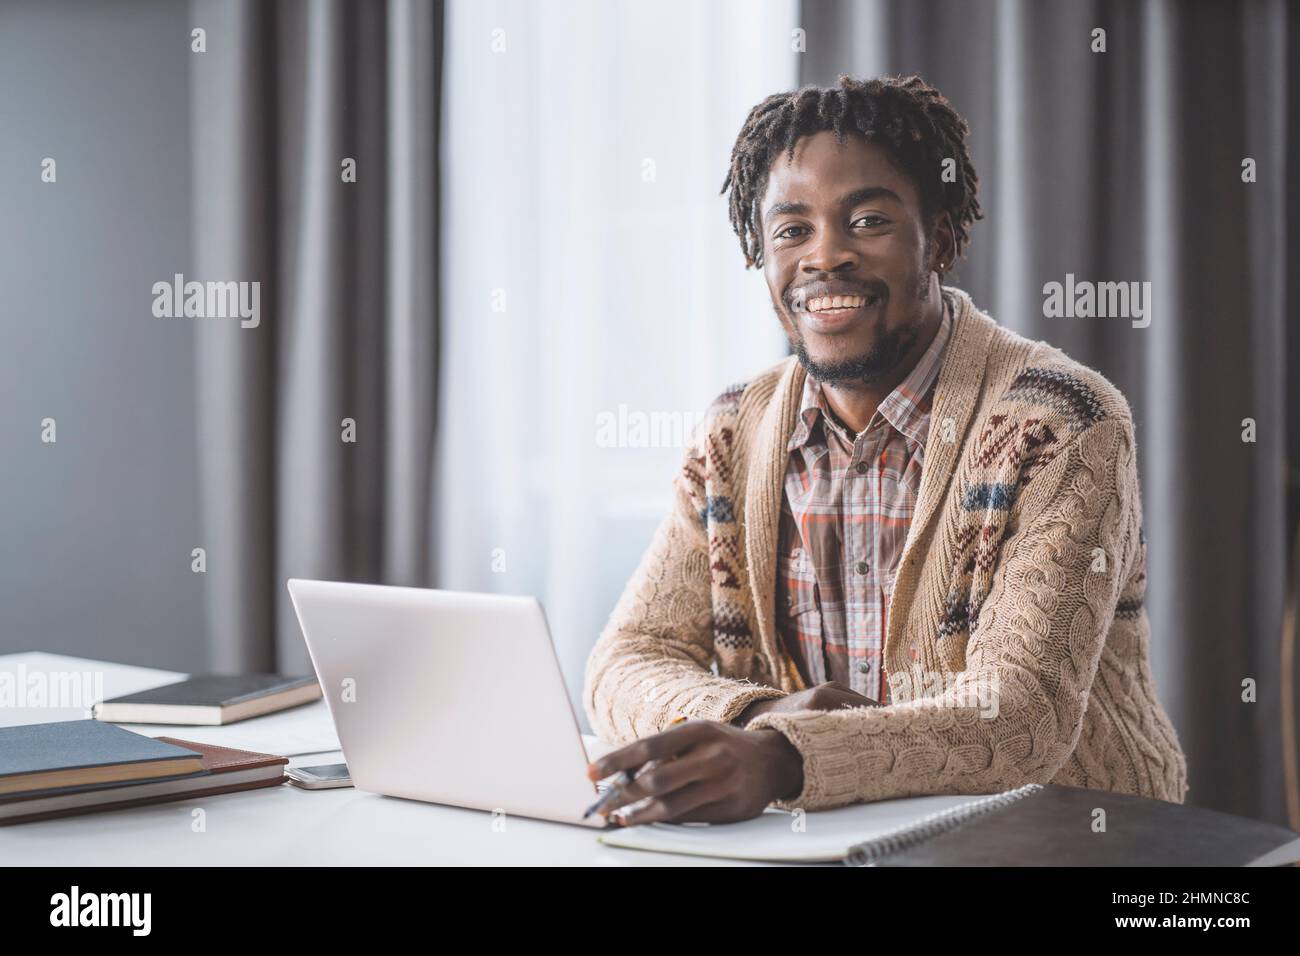 Les étudiants afro-américains étudient à la maison à l'aide d'un ordinateur portable placé à côté de la fenêtre. Jeune entrepreneur travaillant sur son ordinateur portable à la maison. Des étudiants afro-américains étudient à la maison pendant le confinement. Banque D'Images